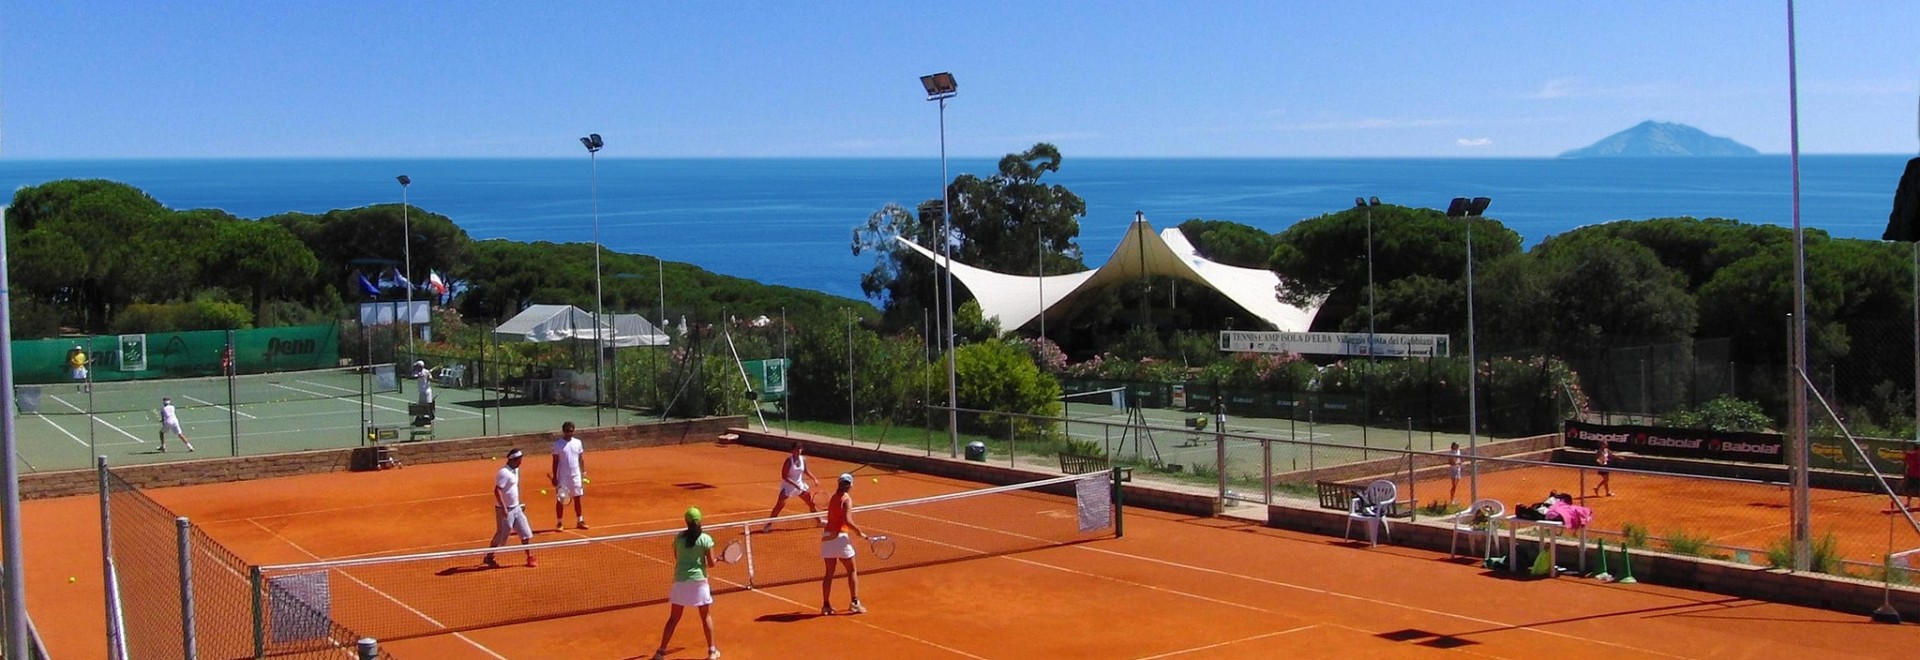 Go Tennis Camp - Isola D'elba, Tuscany